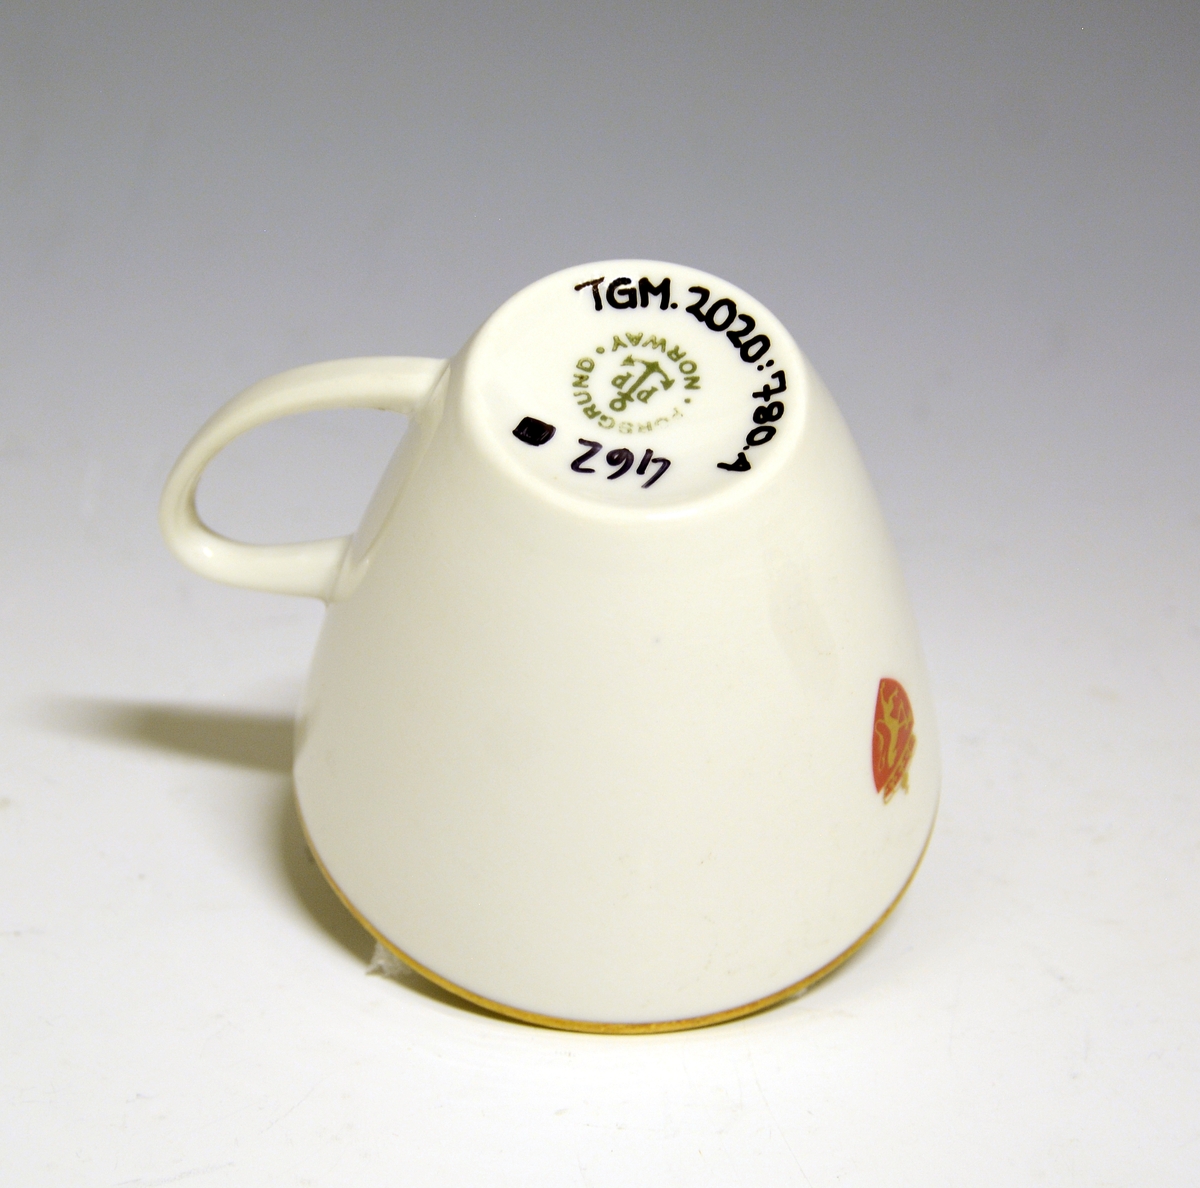 Kopp av porselen med hvit glasur. Dekorert med gullkant langs toppranden og riksvåpen.
Modell: Jubileum 2340, formgitt av Eystein Sandnes i 1959.